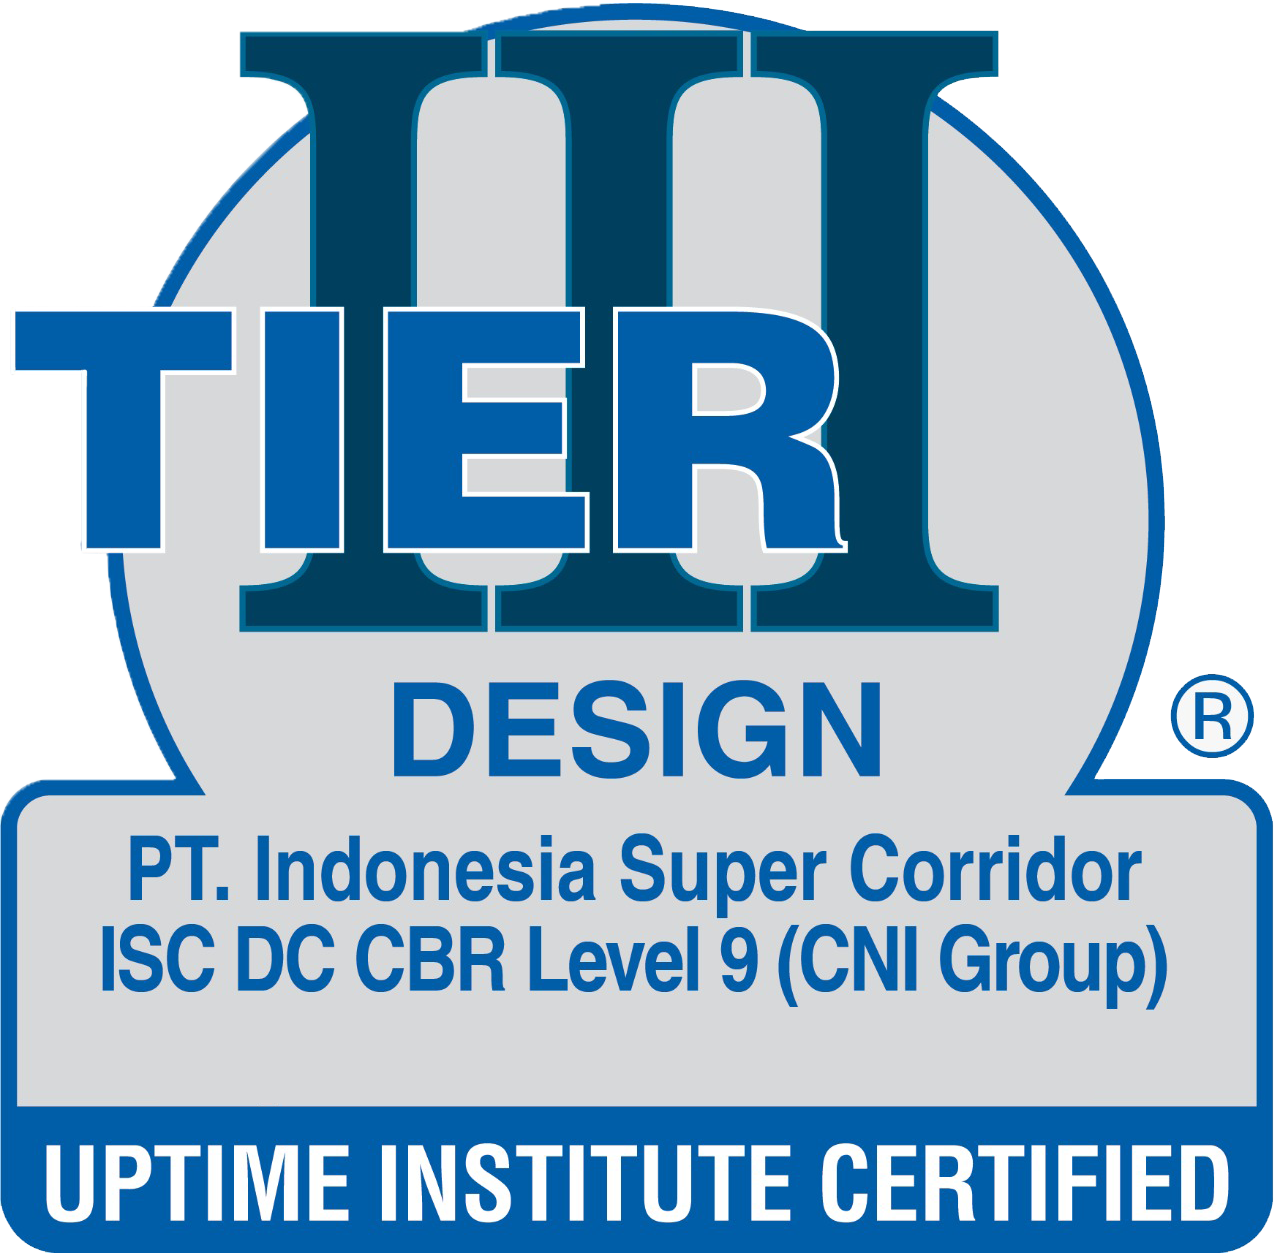 Uptime Institute Certified - Tier III Design